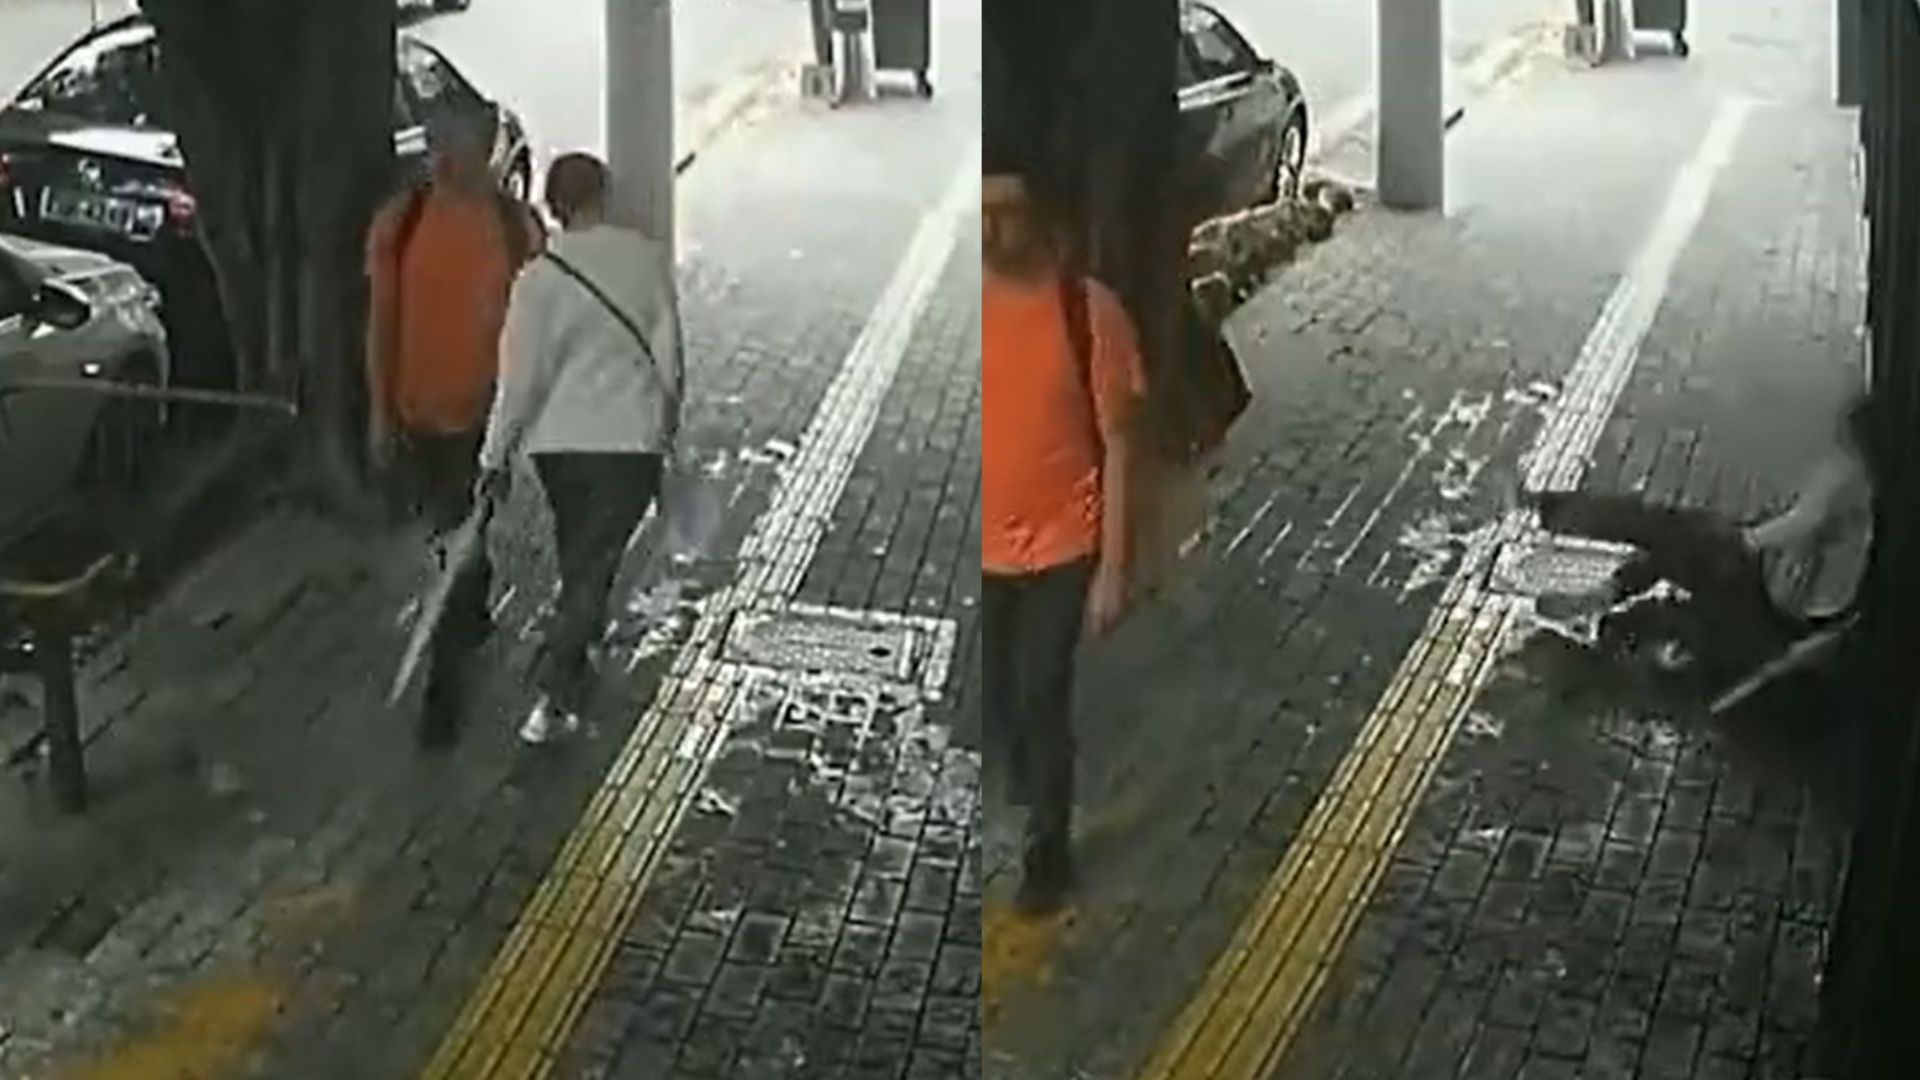 Vídeo: Homem empurra idosa de 86 anos em calçada, que bate cabeça e fratura fêmur